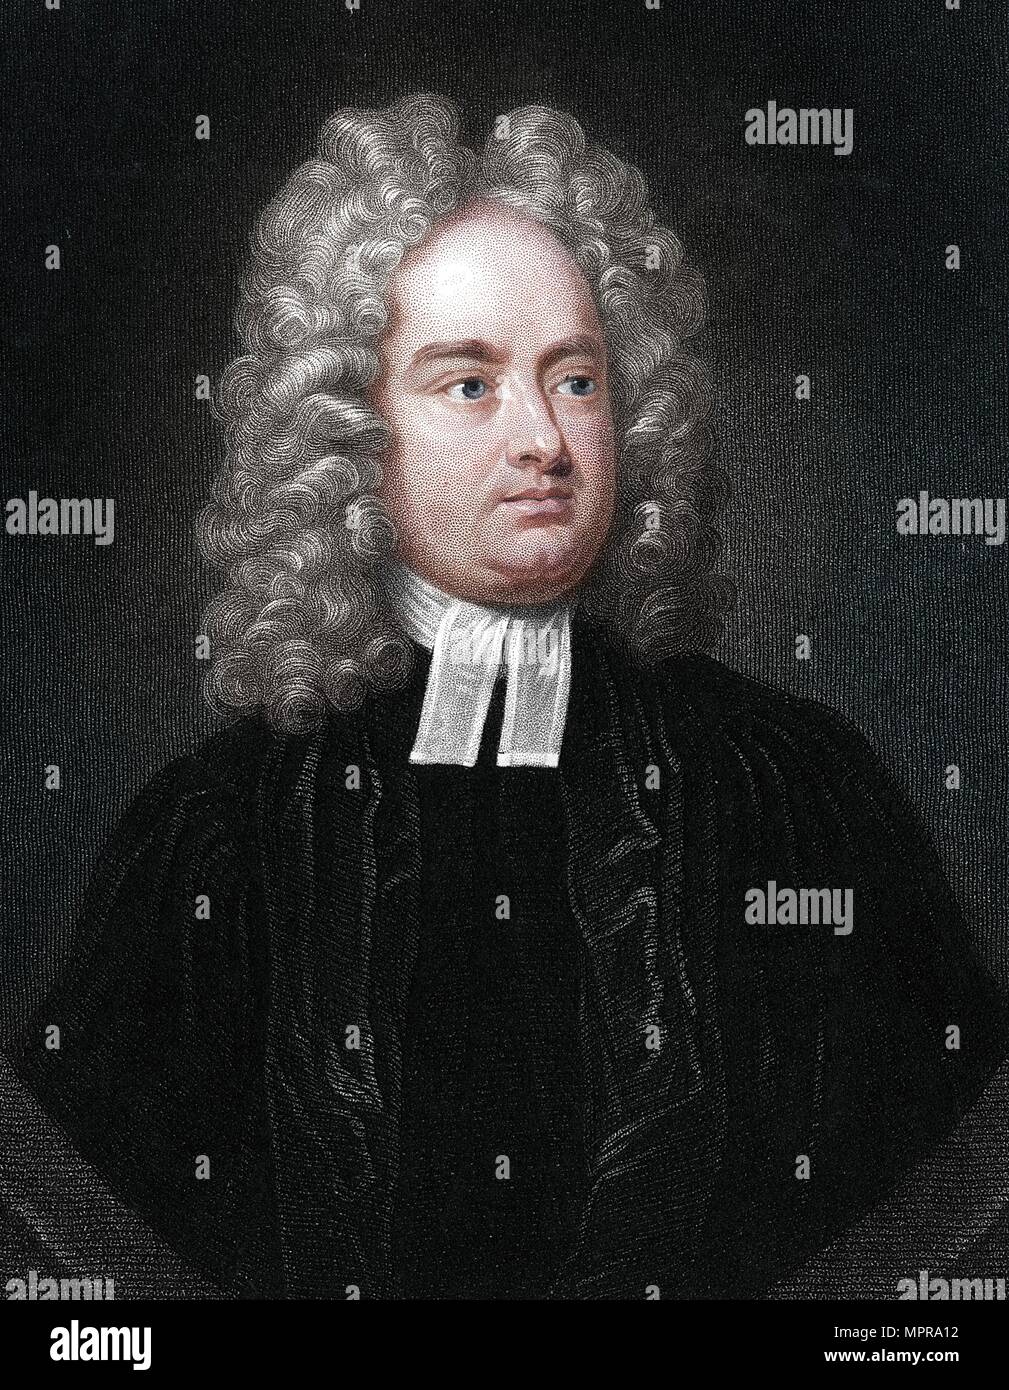 Jonathan Swift, membre du clergé anglo-irlandais, satiriste et poète. Artiste : Inconnu. Banque D'Images